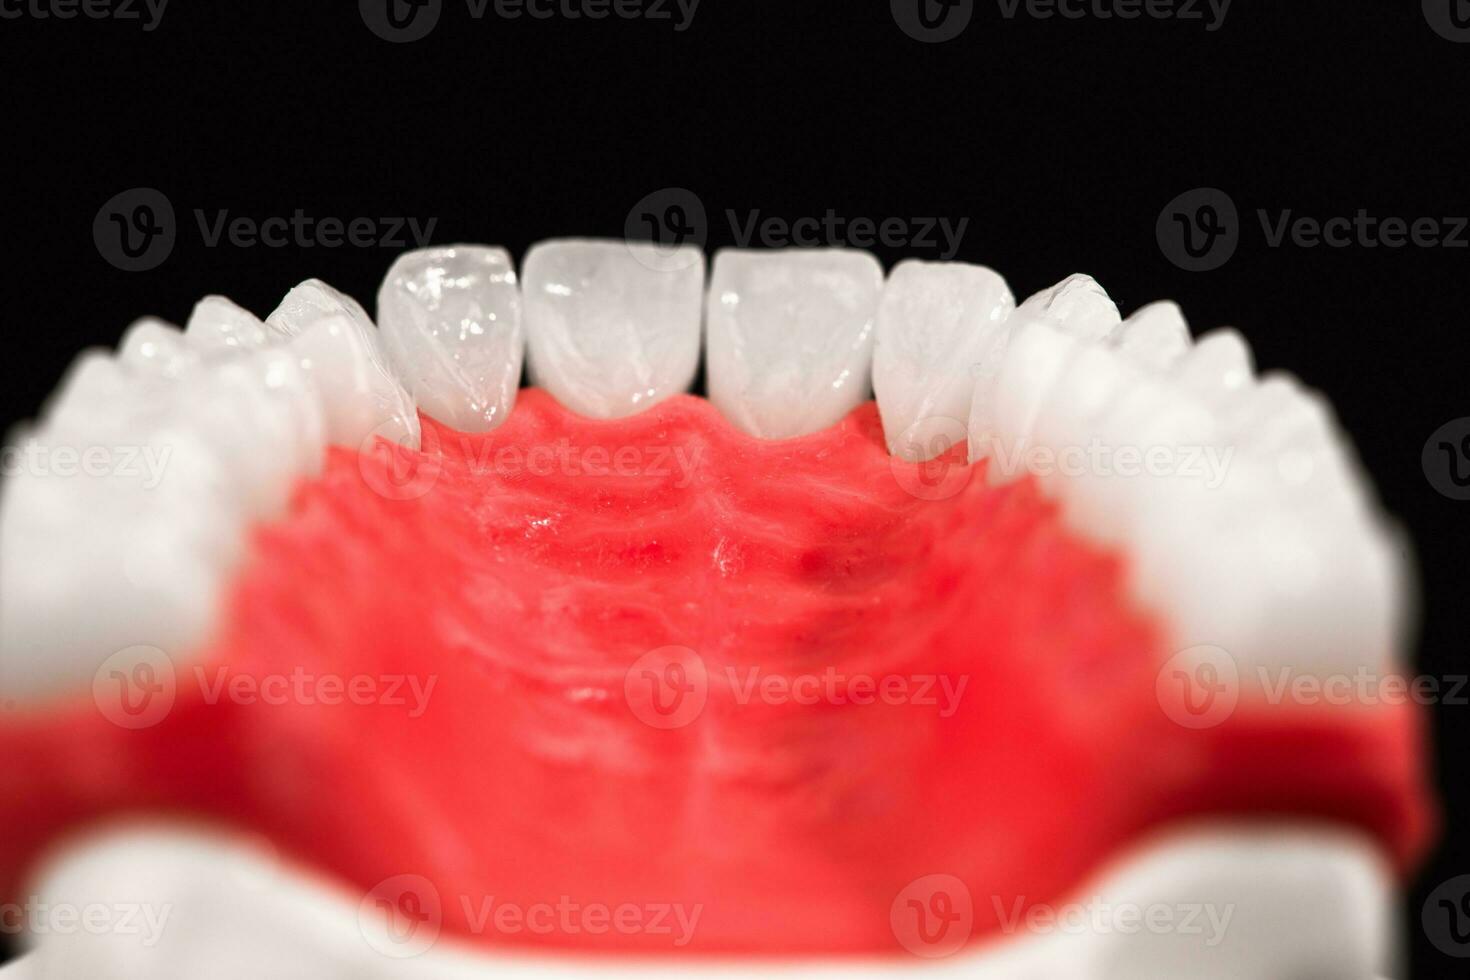 inferiore umano mascella con denti anatomia modello isolato su nero sfondo. salutare denti, dentale cura e ortodontico medico concetto. foto